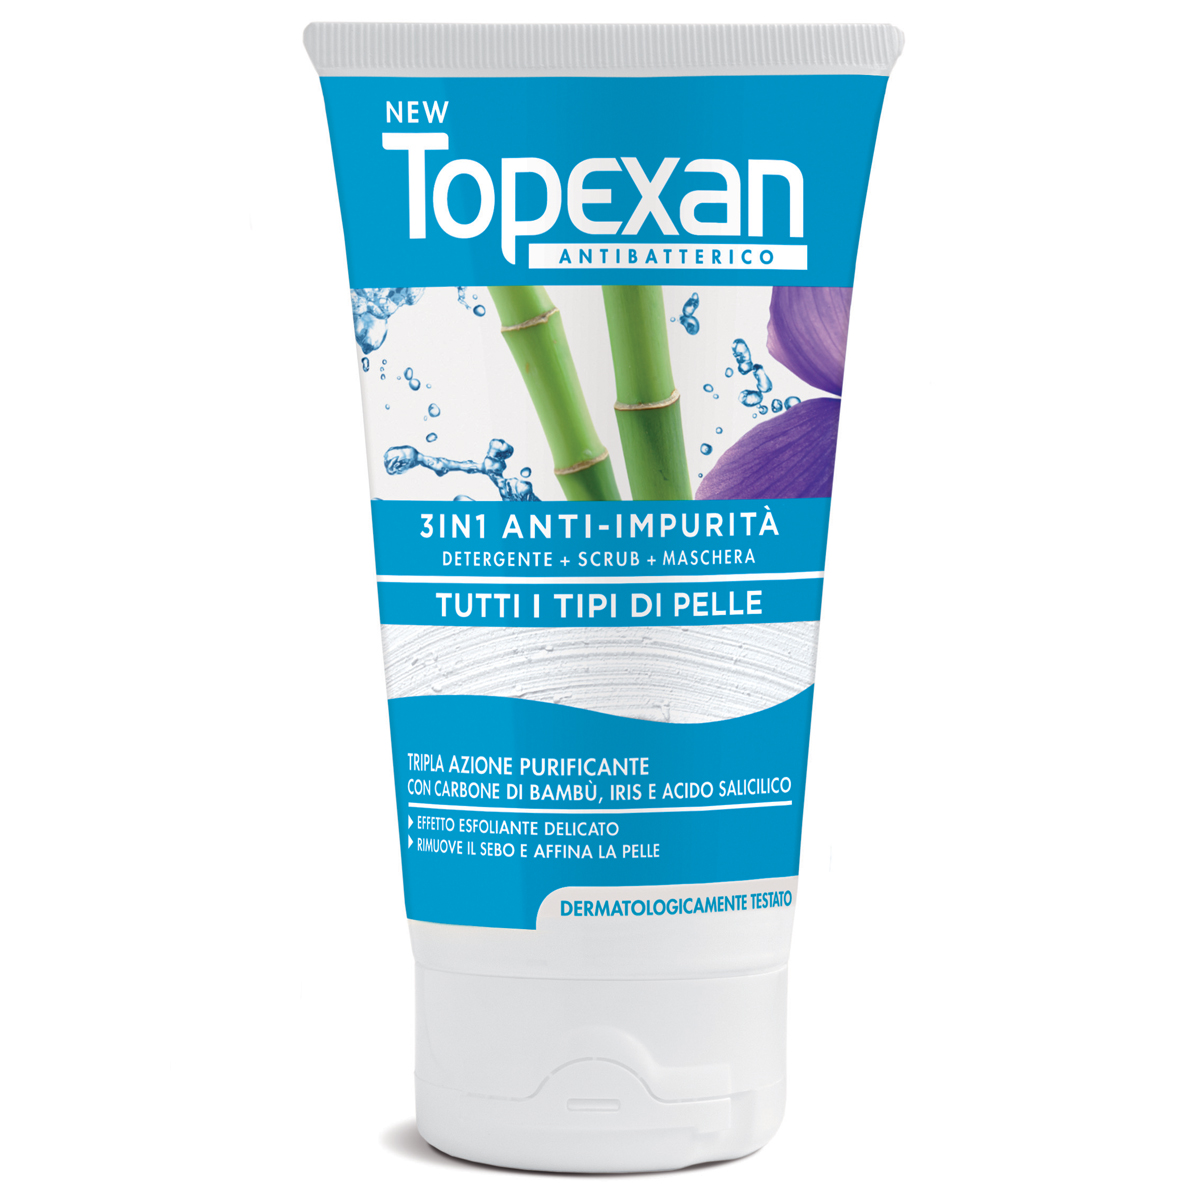 Image of New Topexan 3In1 Anti-Impurità Soco 150ml